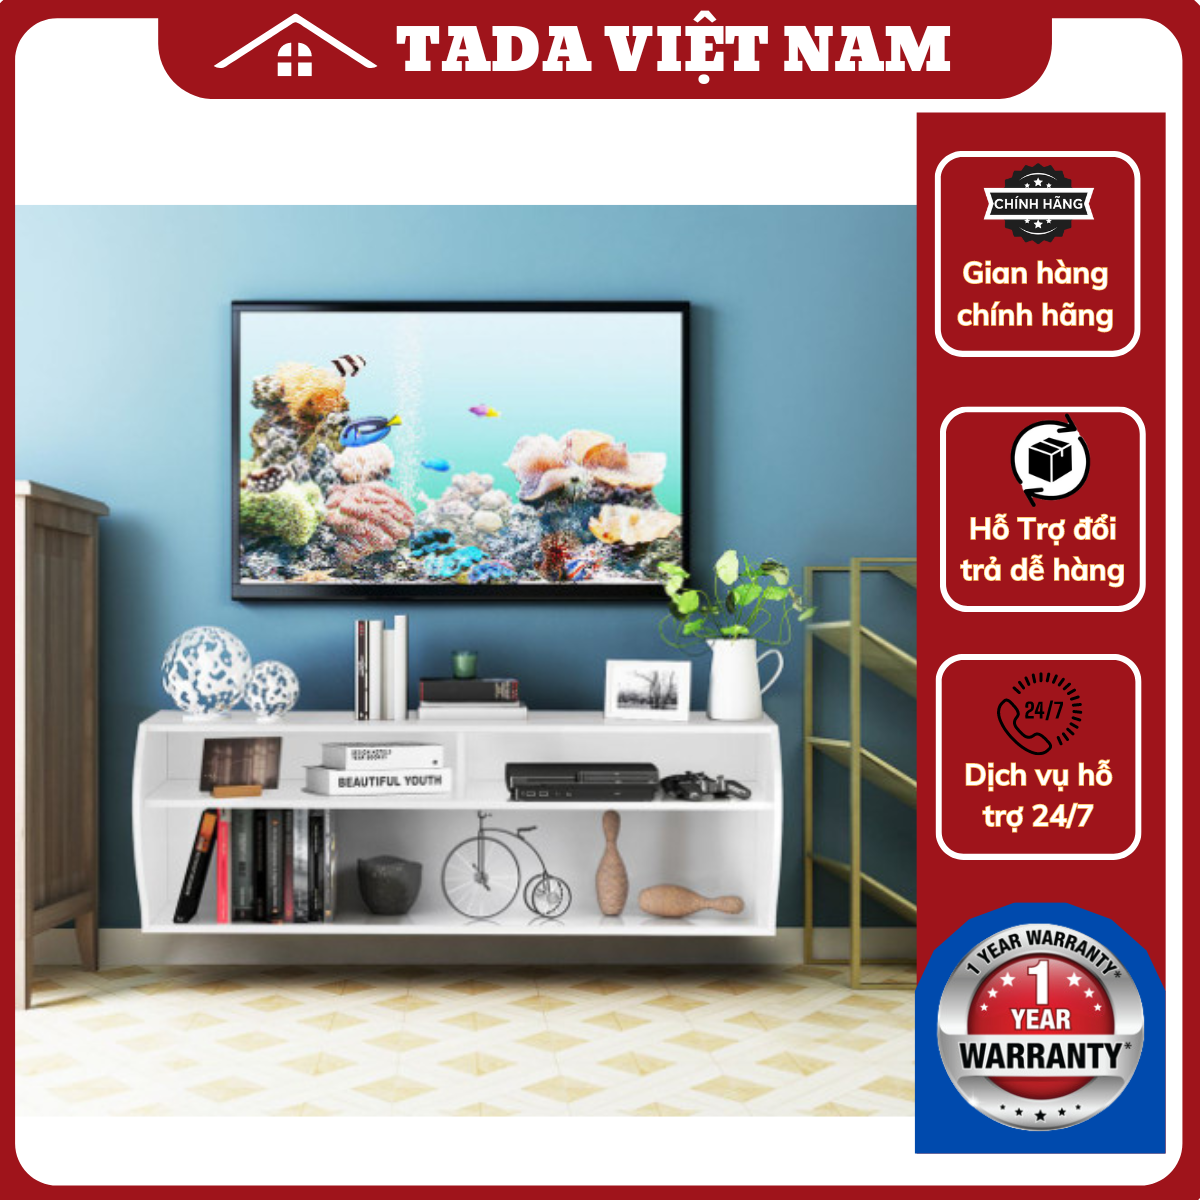 Kệ tivi treo tường Roman, chất liệu gỗ MDF thương hiệu TADA VIETNAM- TDTV